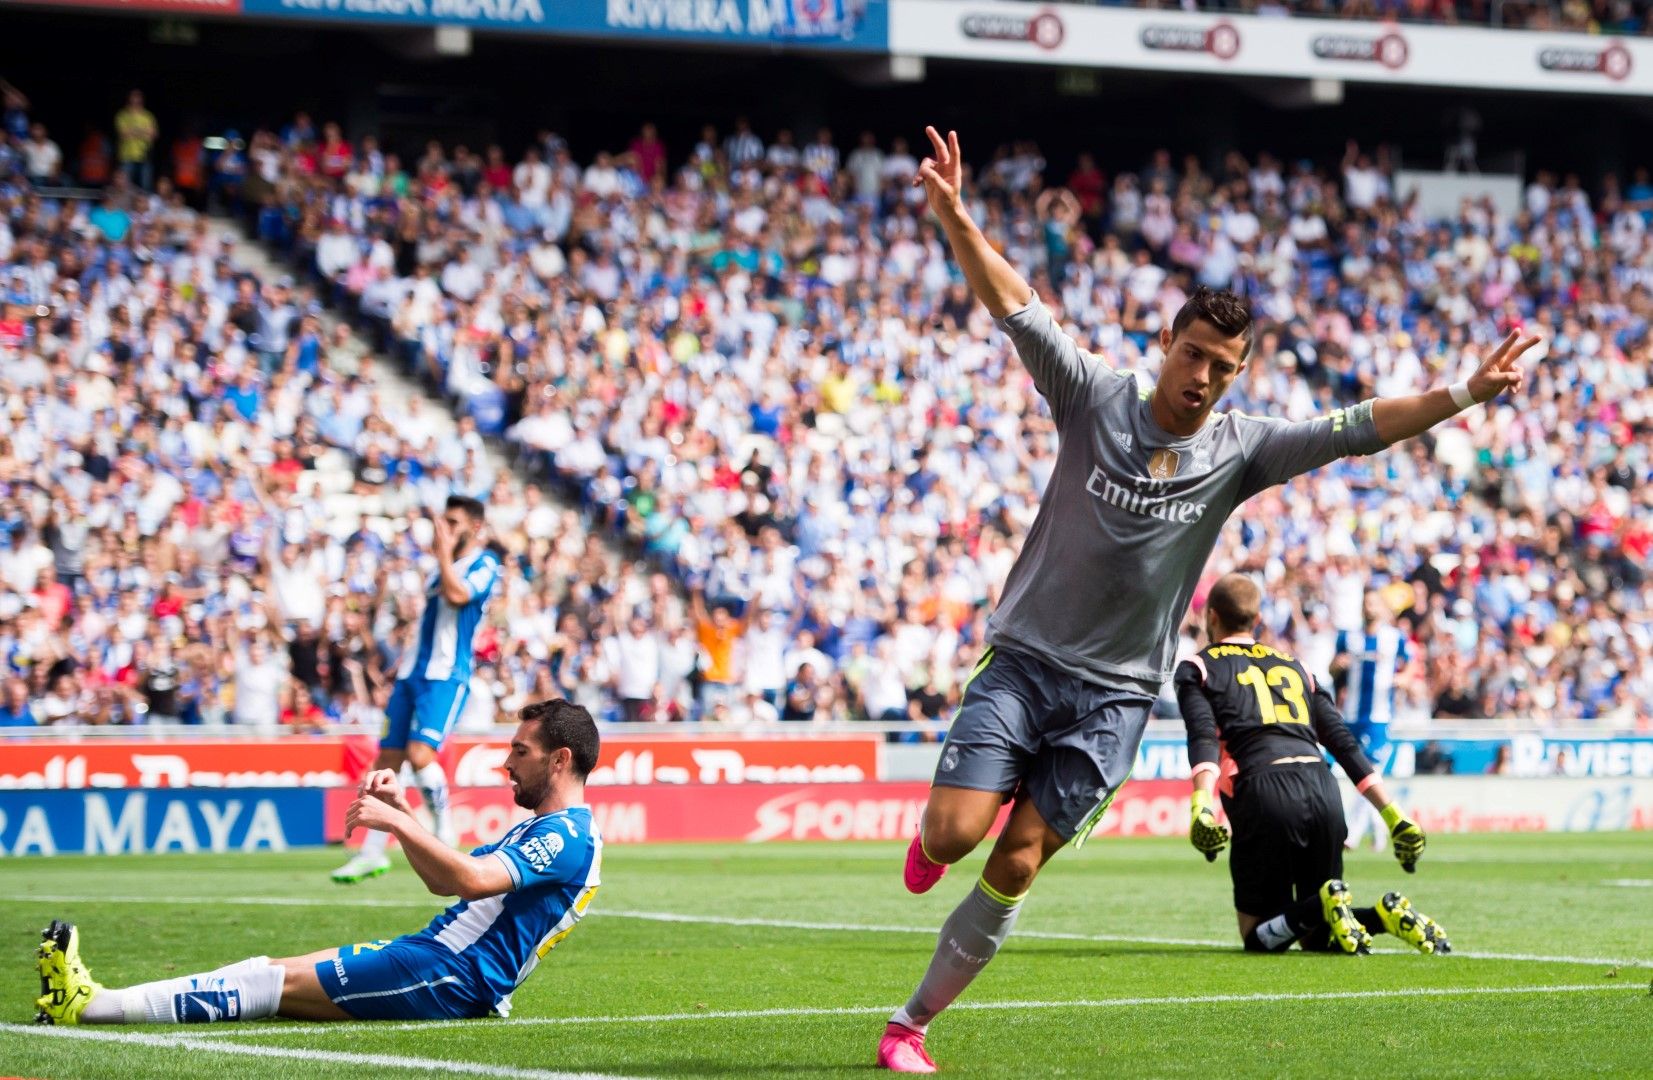 Първият кръг от сезон 2015/16, вкарва 5 на "Еспаньол" и става голмайстор №1 на "Реал" в Ла Лига